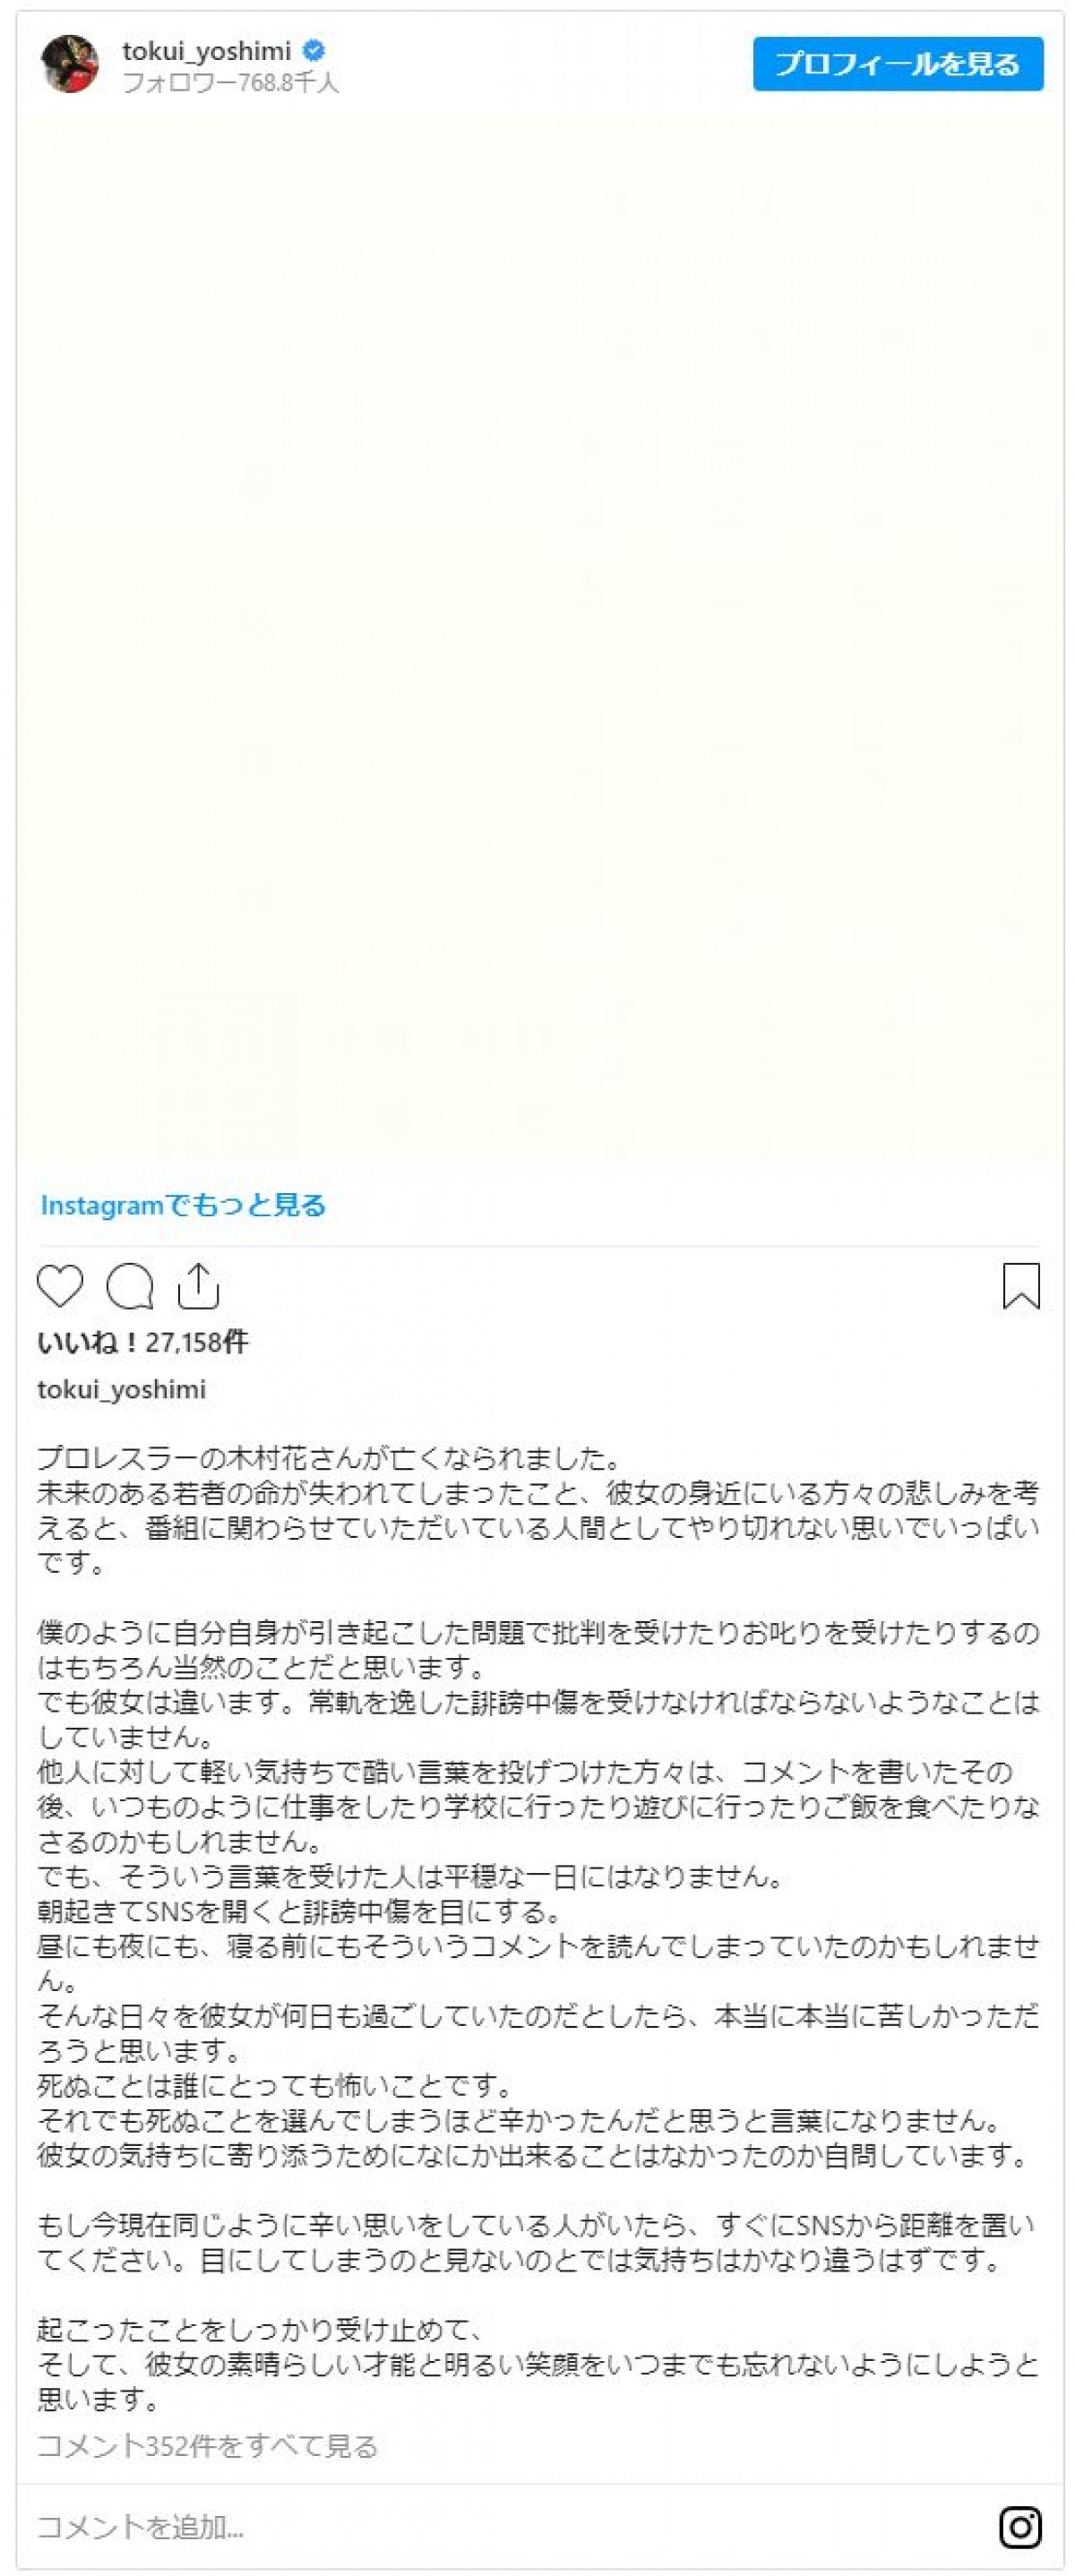 『テラハ』出演自粛中のチュートリアル徳井、木村花さん死去にコメント